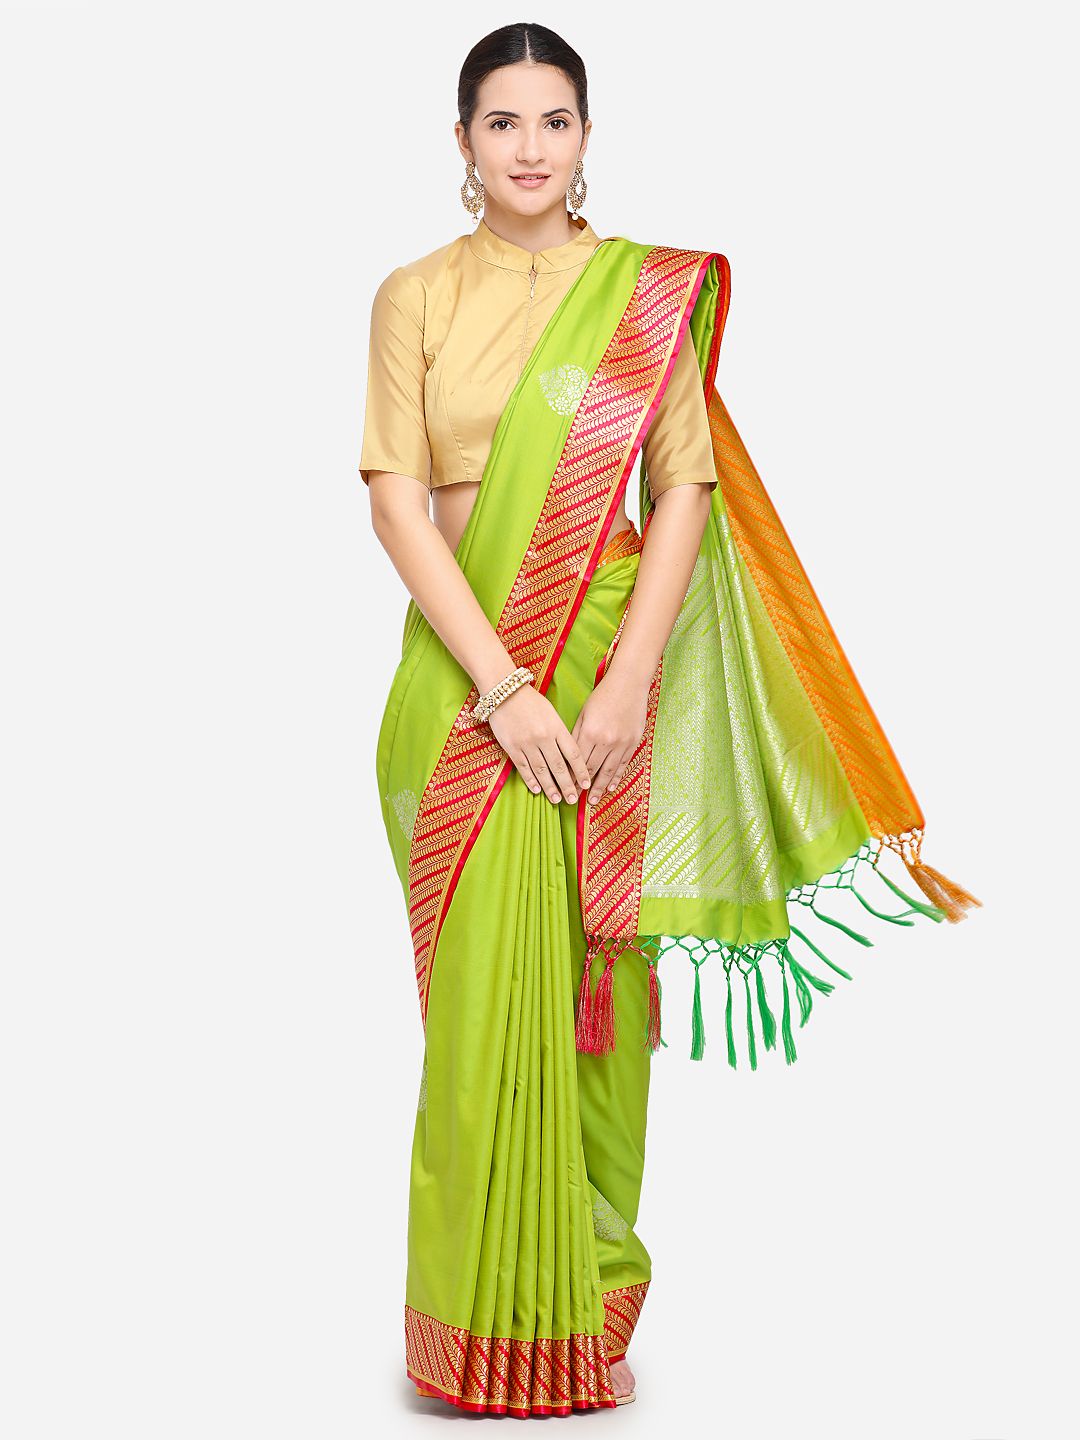 Varkala Silk Sarees Green & Red Silk Blend Woven Design Banarasi Saree Price in India